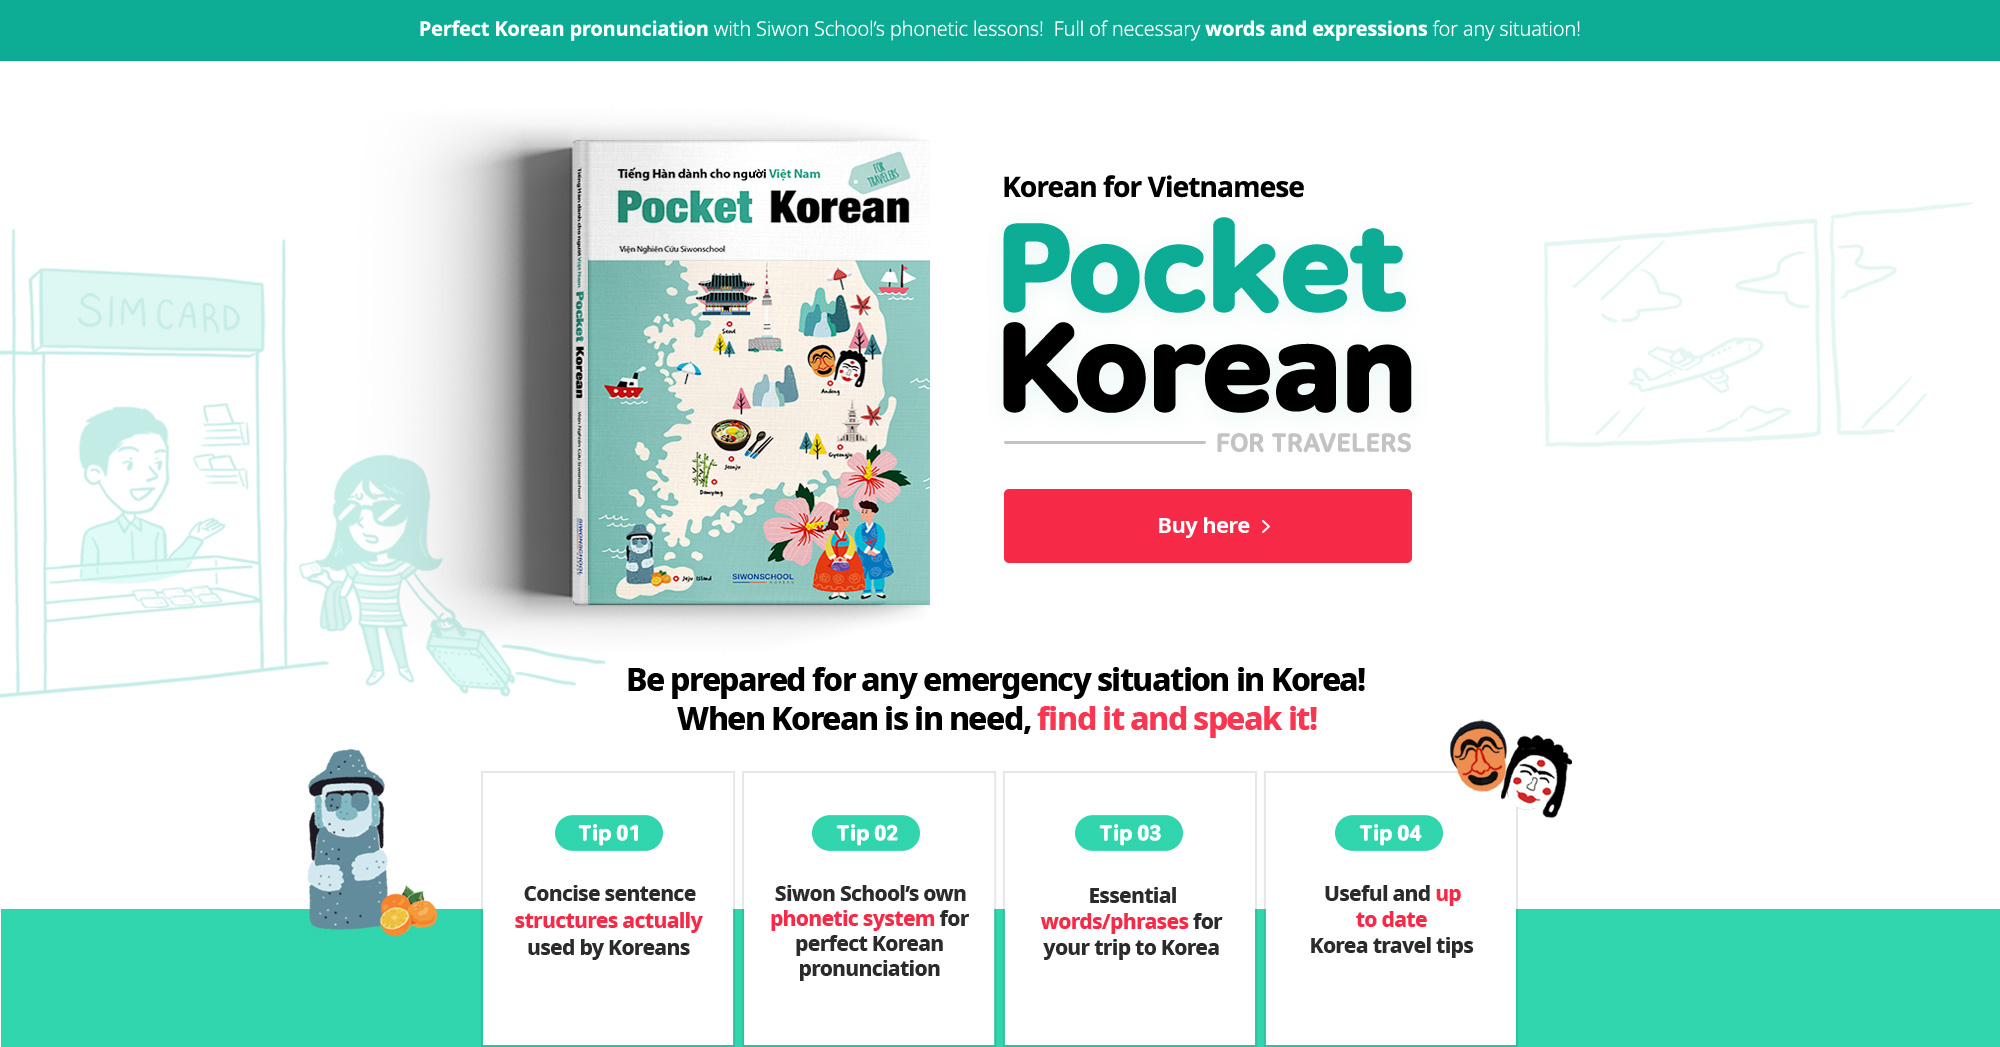 베트남인을 위한 Pocket Korean. 한국 여행 중 긴급 상황 대비! 한국어가 급할 때 바로 찾아, 바로 말한다!